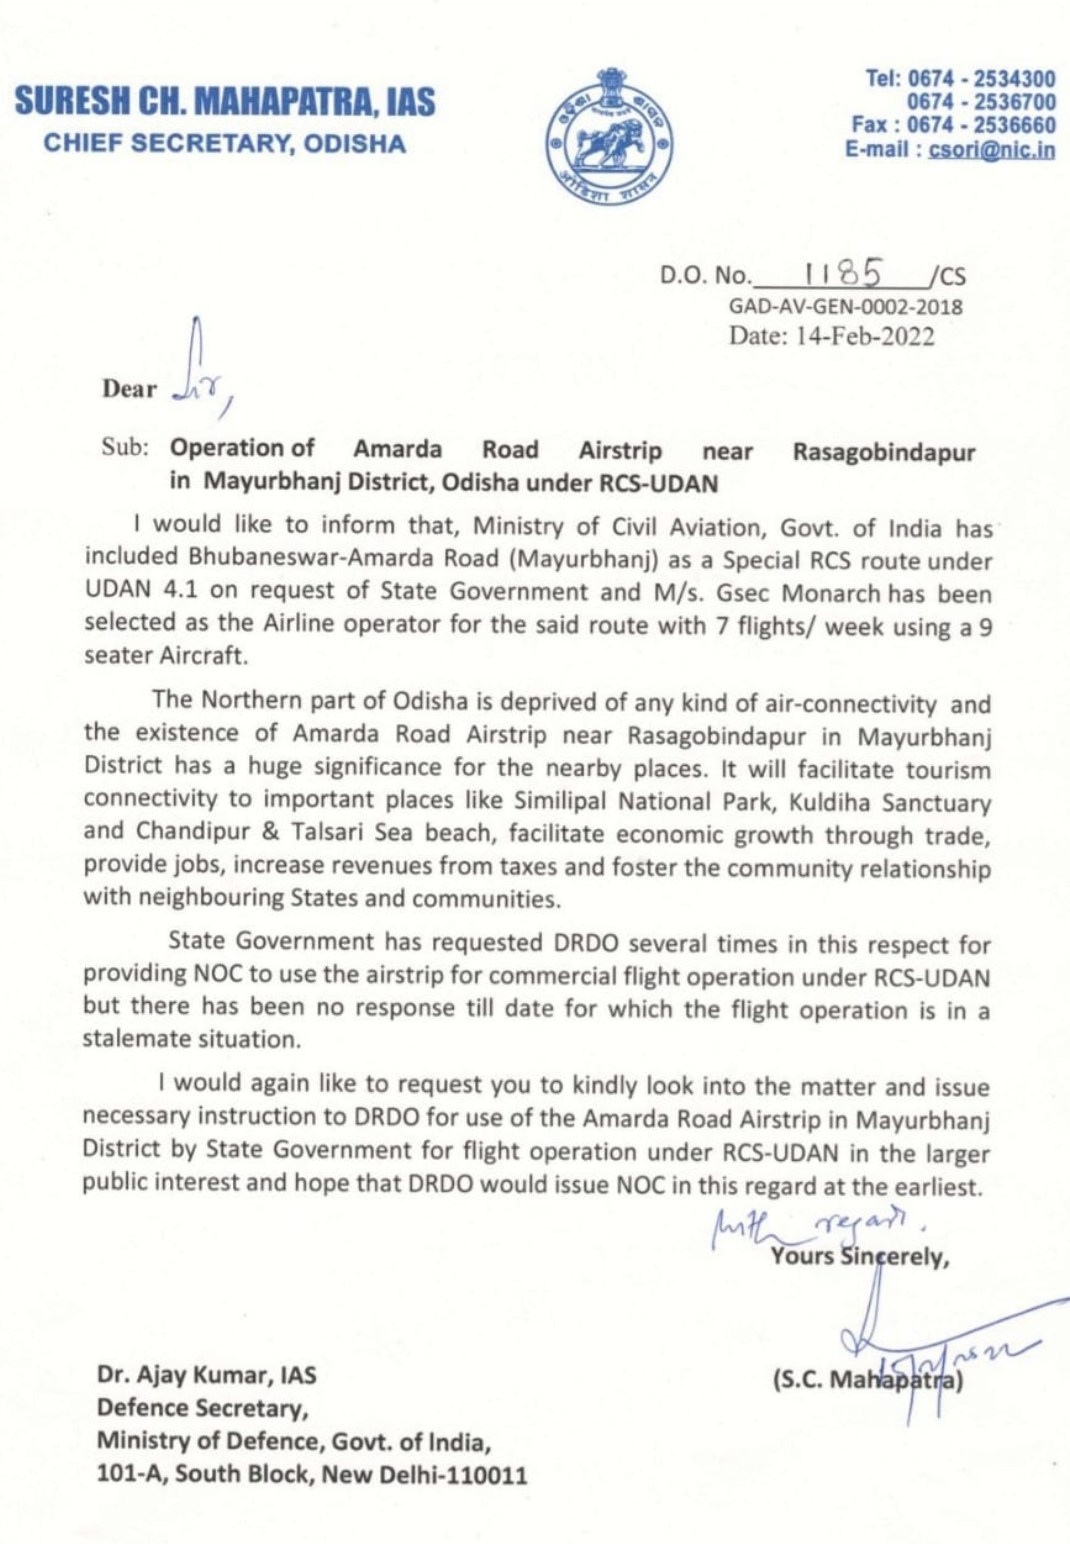 odisha chief secretary demand noc to drdo for amarda air strip in mayurbhanj